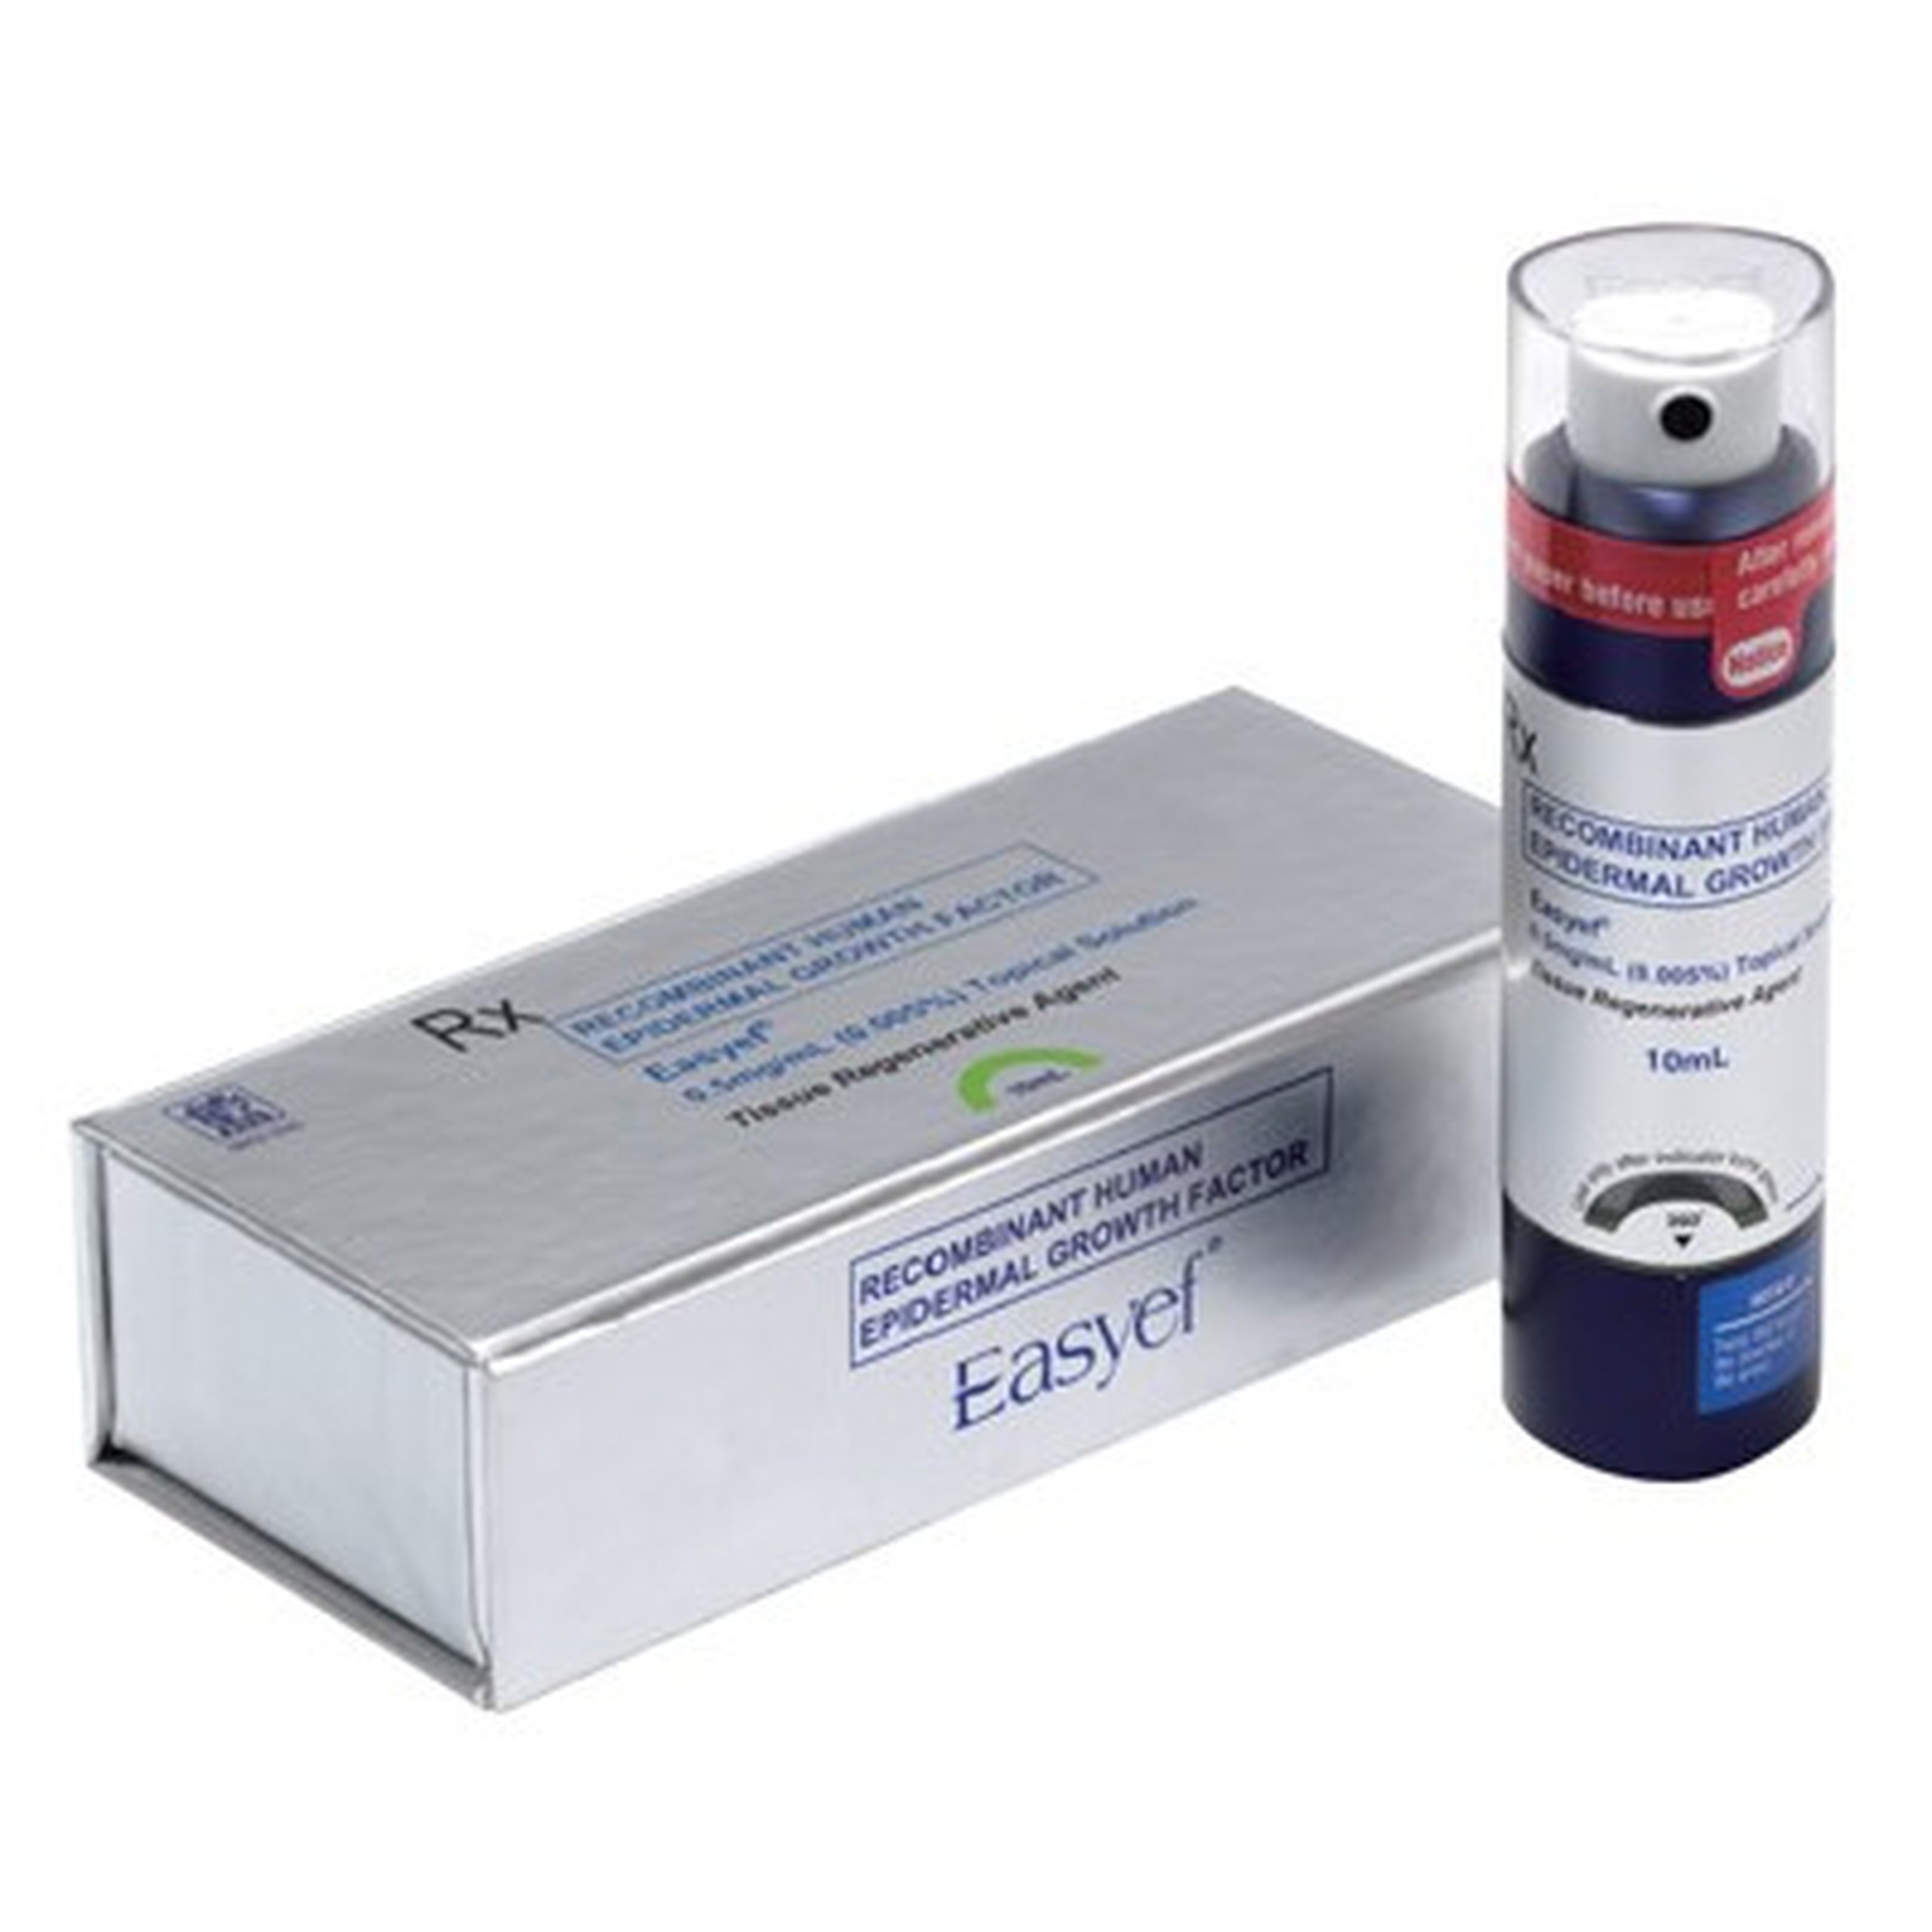 Thuốc Easyef 0.005% Daewoong điều trị vết loét do tiểu đường (10ml)